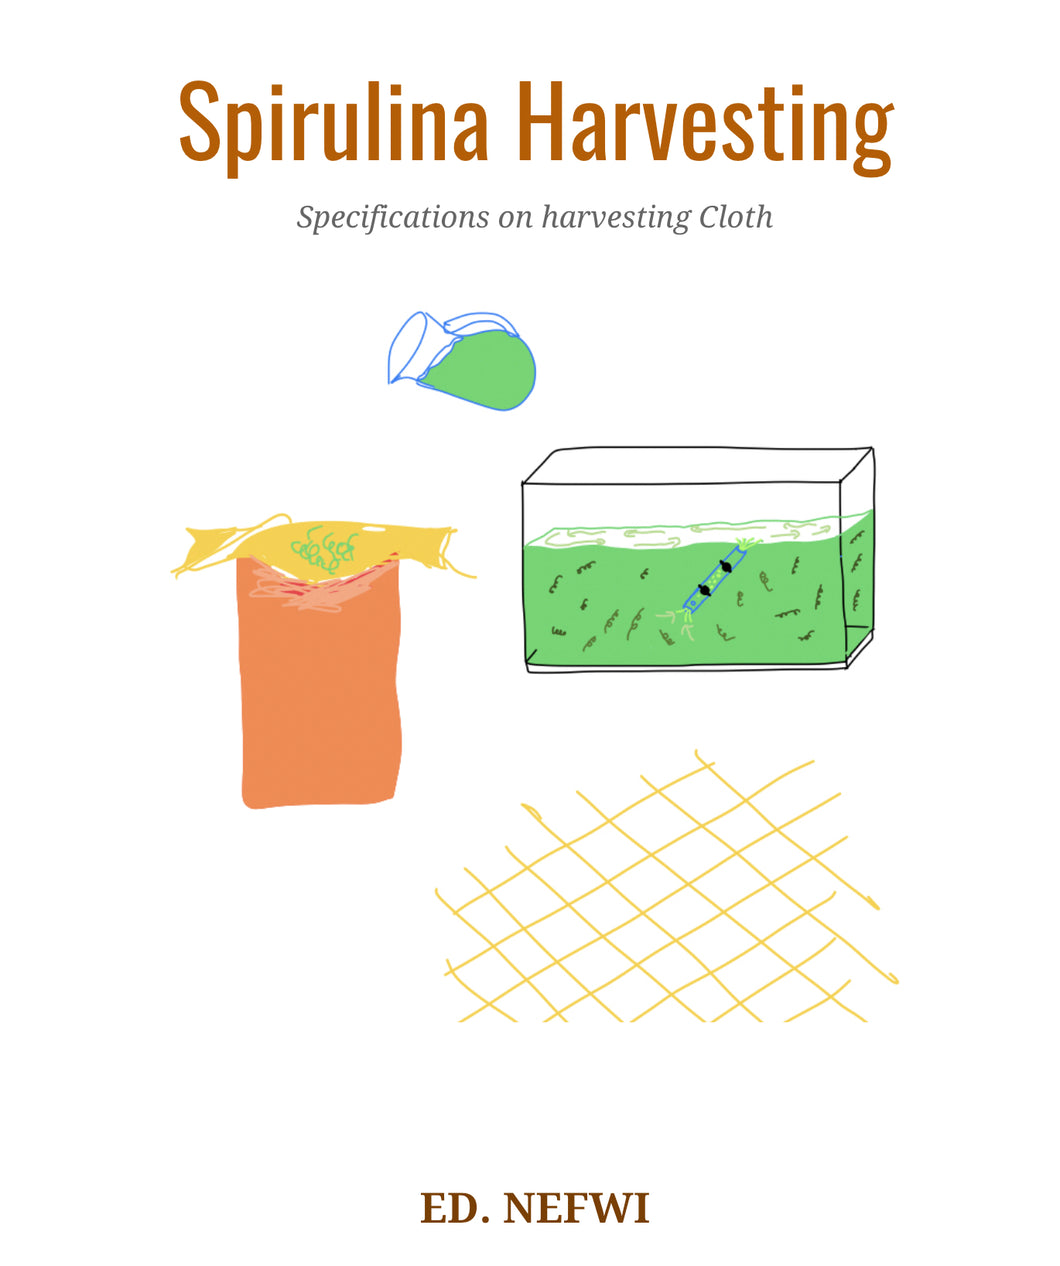 Spirulina Harvesting Specifications